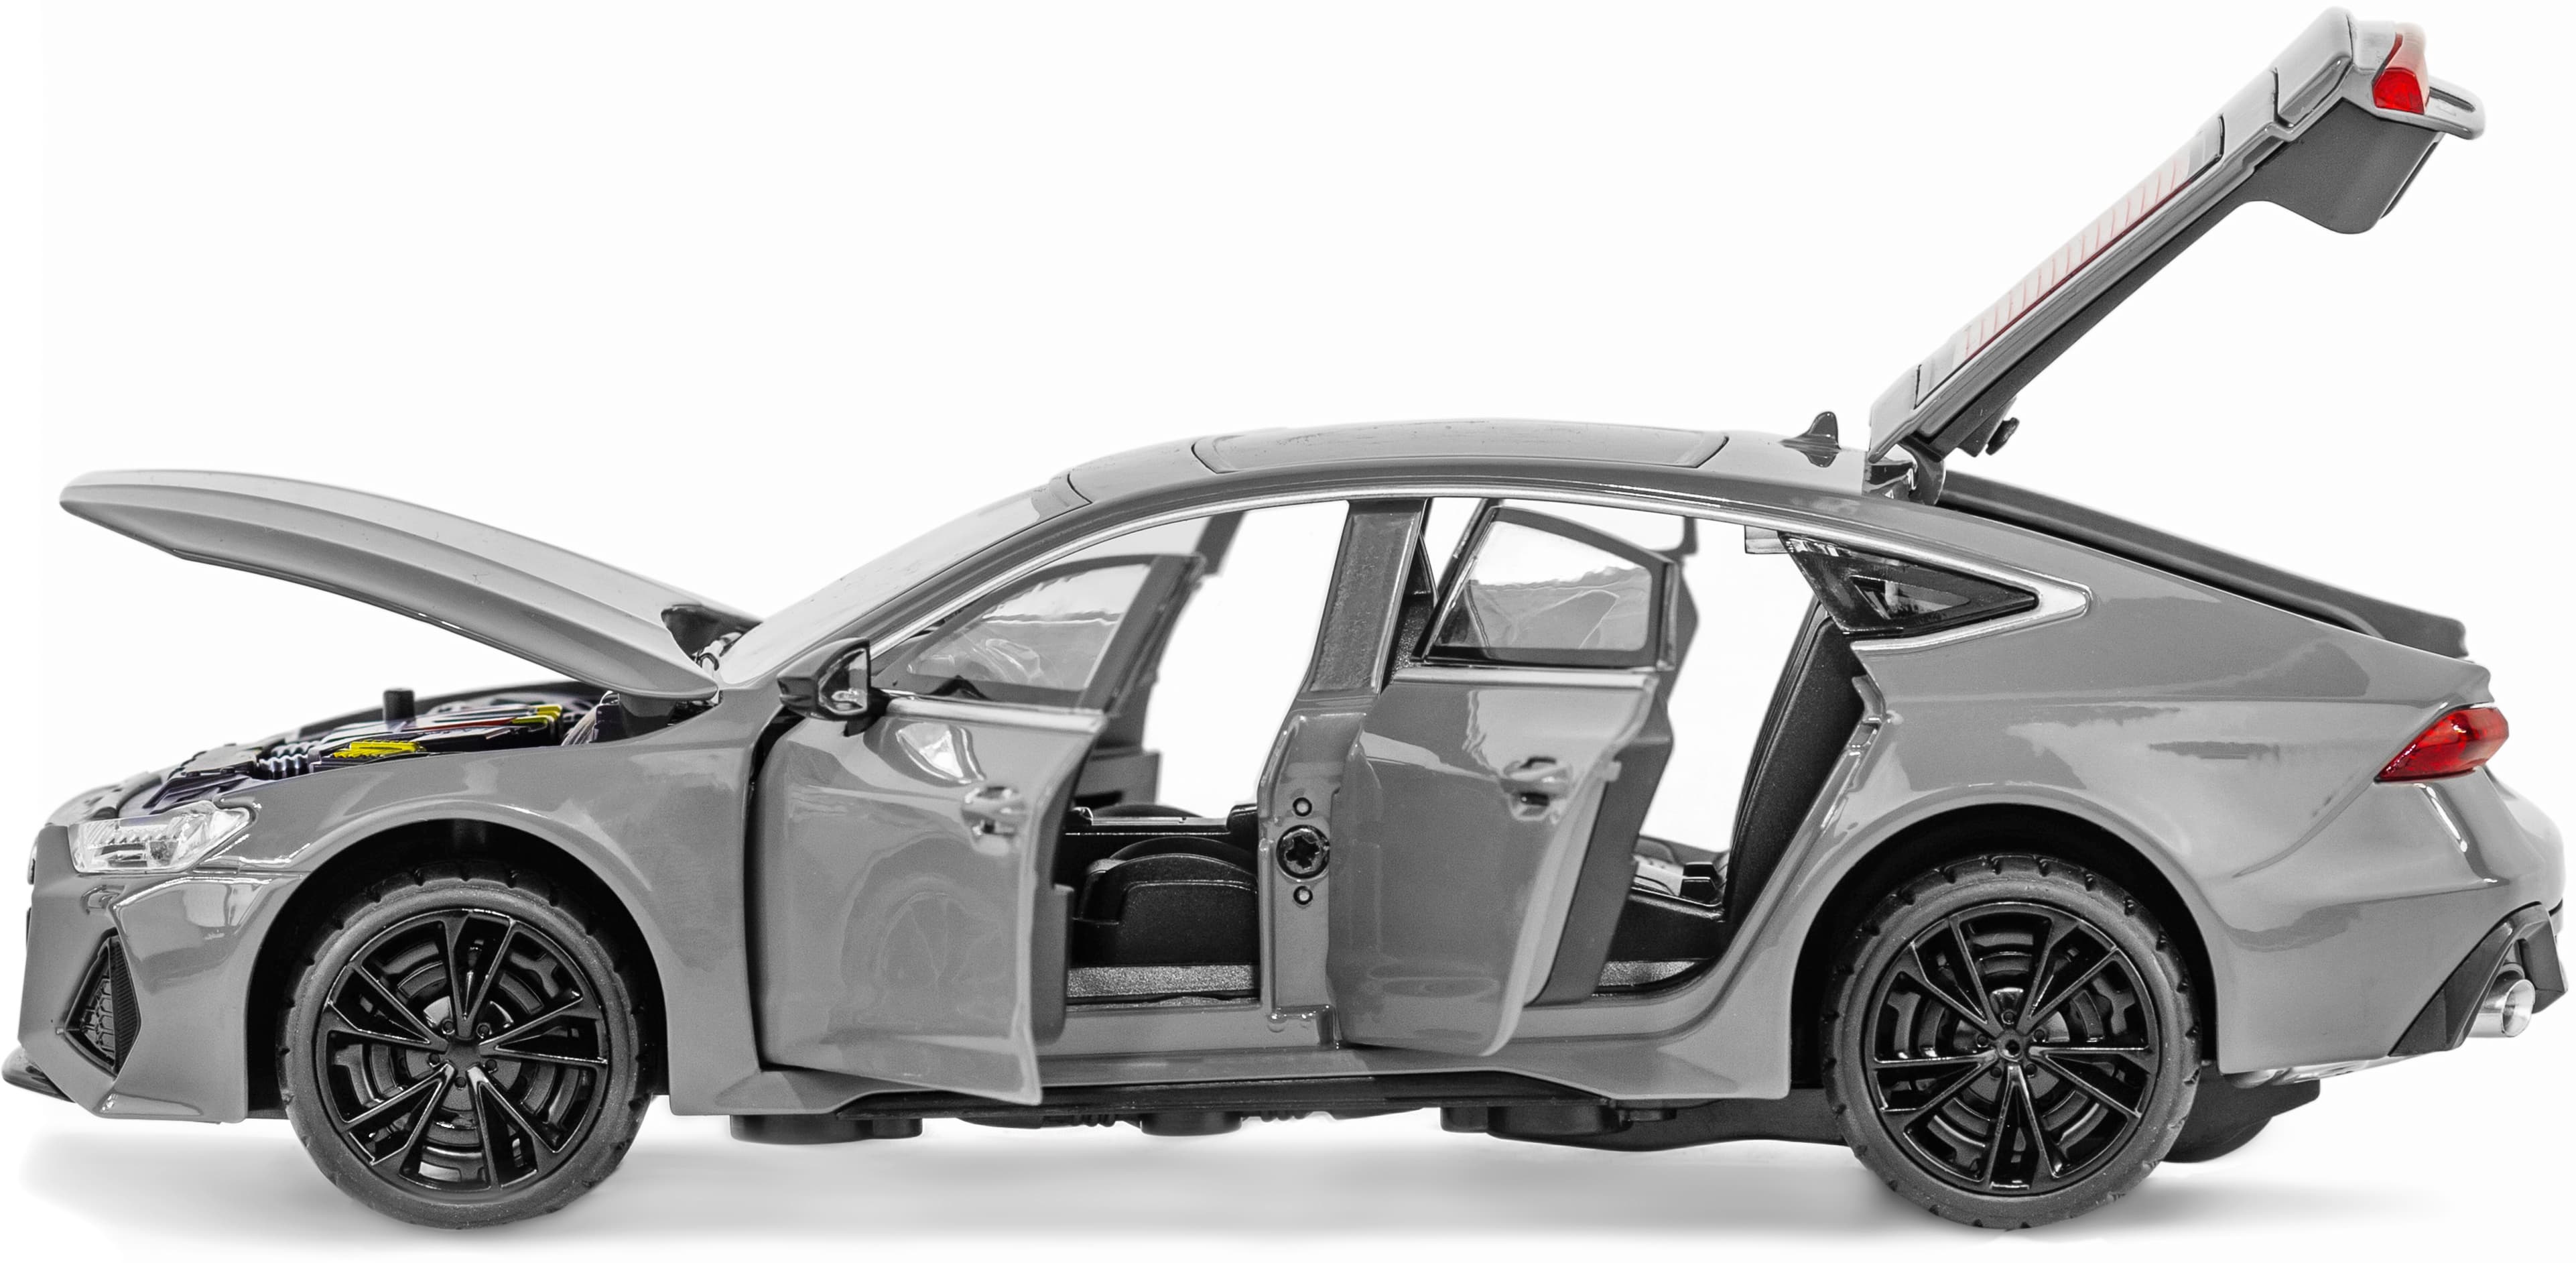 Металлическая машинка ChiMei Model 1:24 «Audi RS7» CM340, 21 см., инерционная, свет, звук / Серый